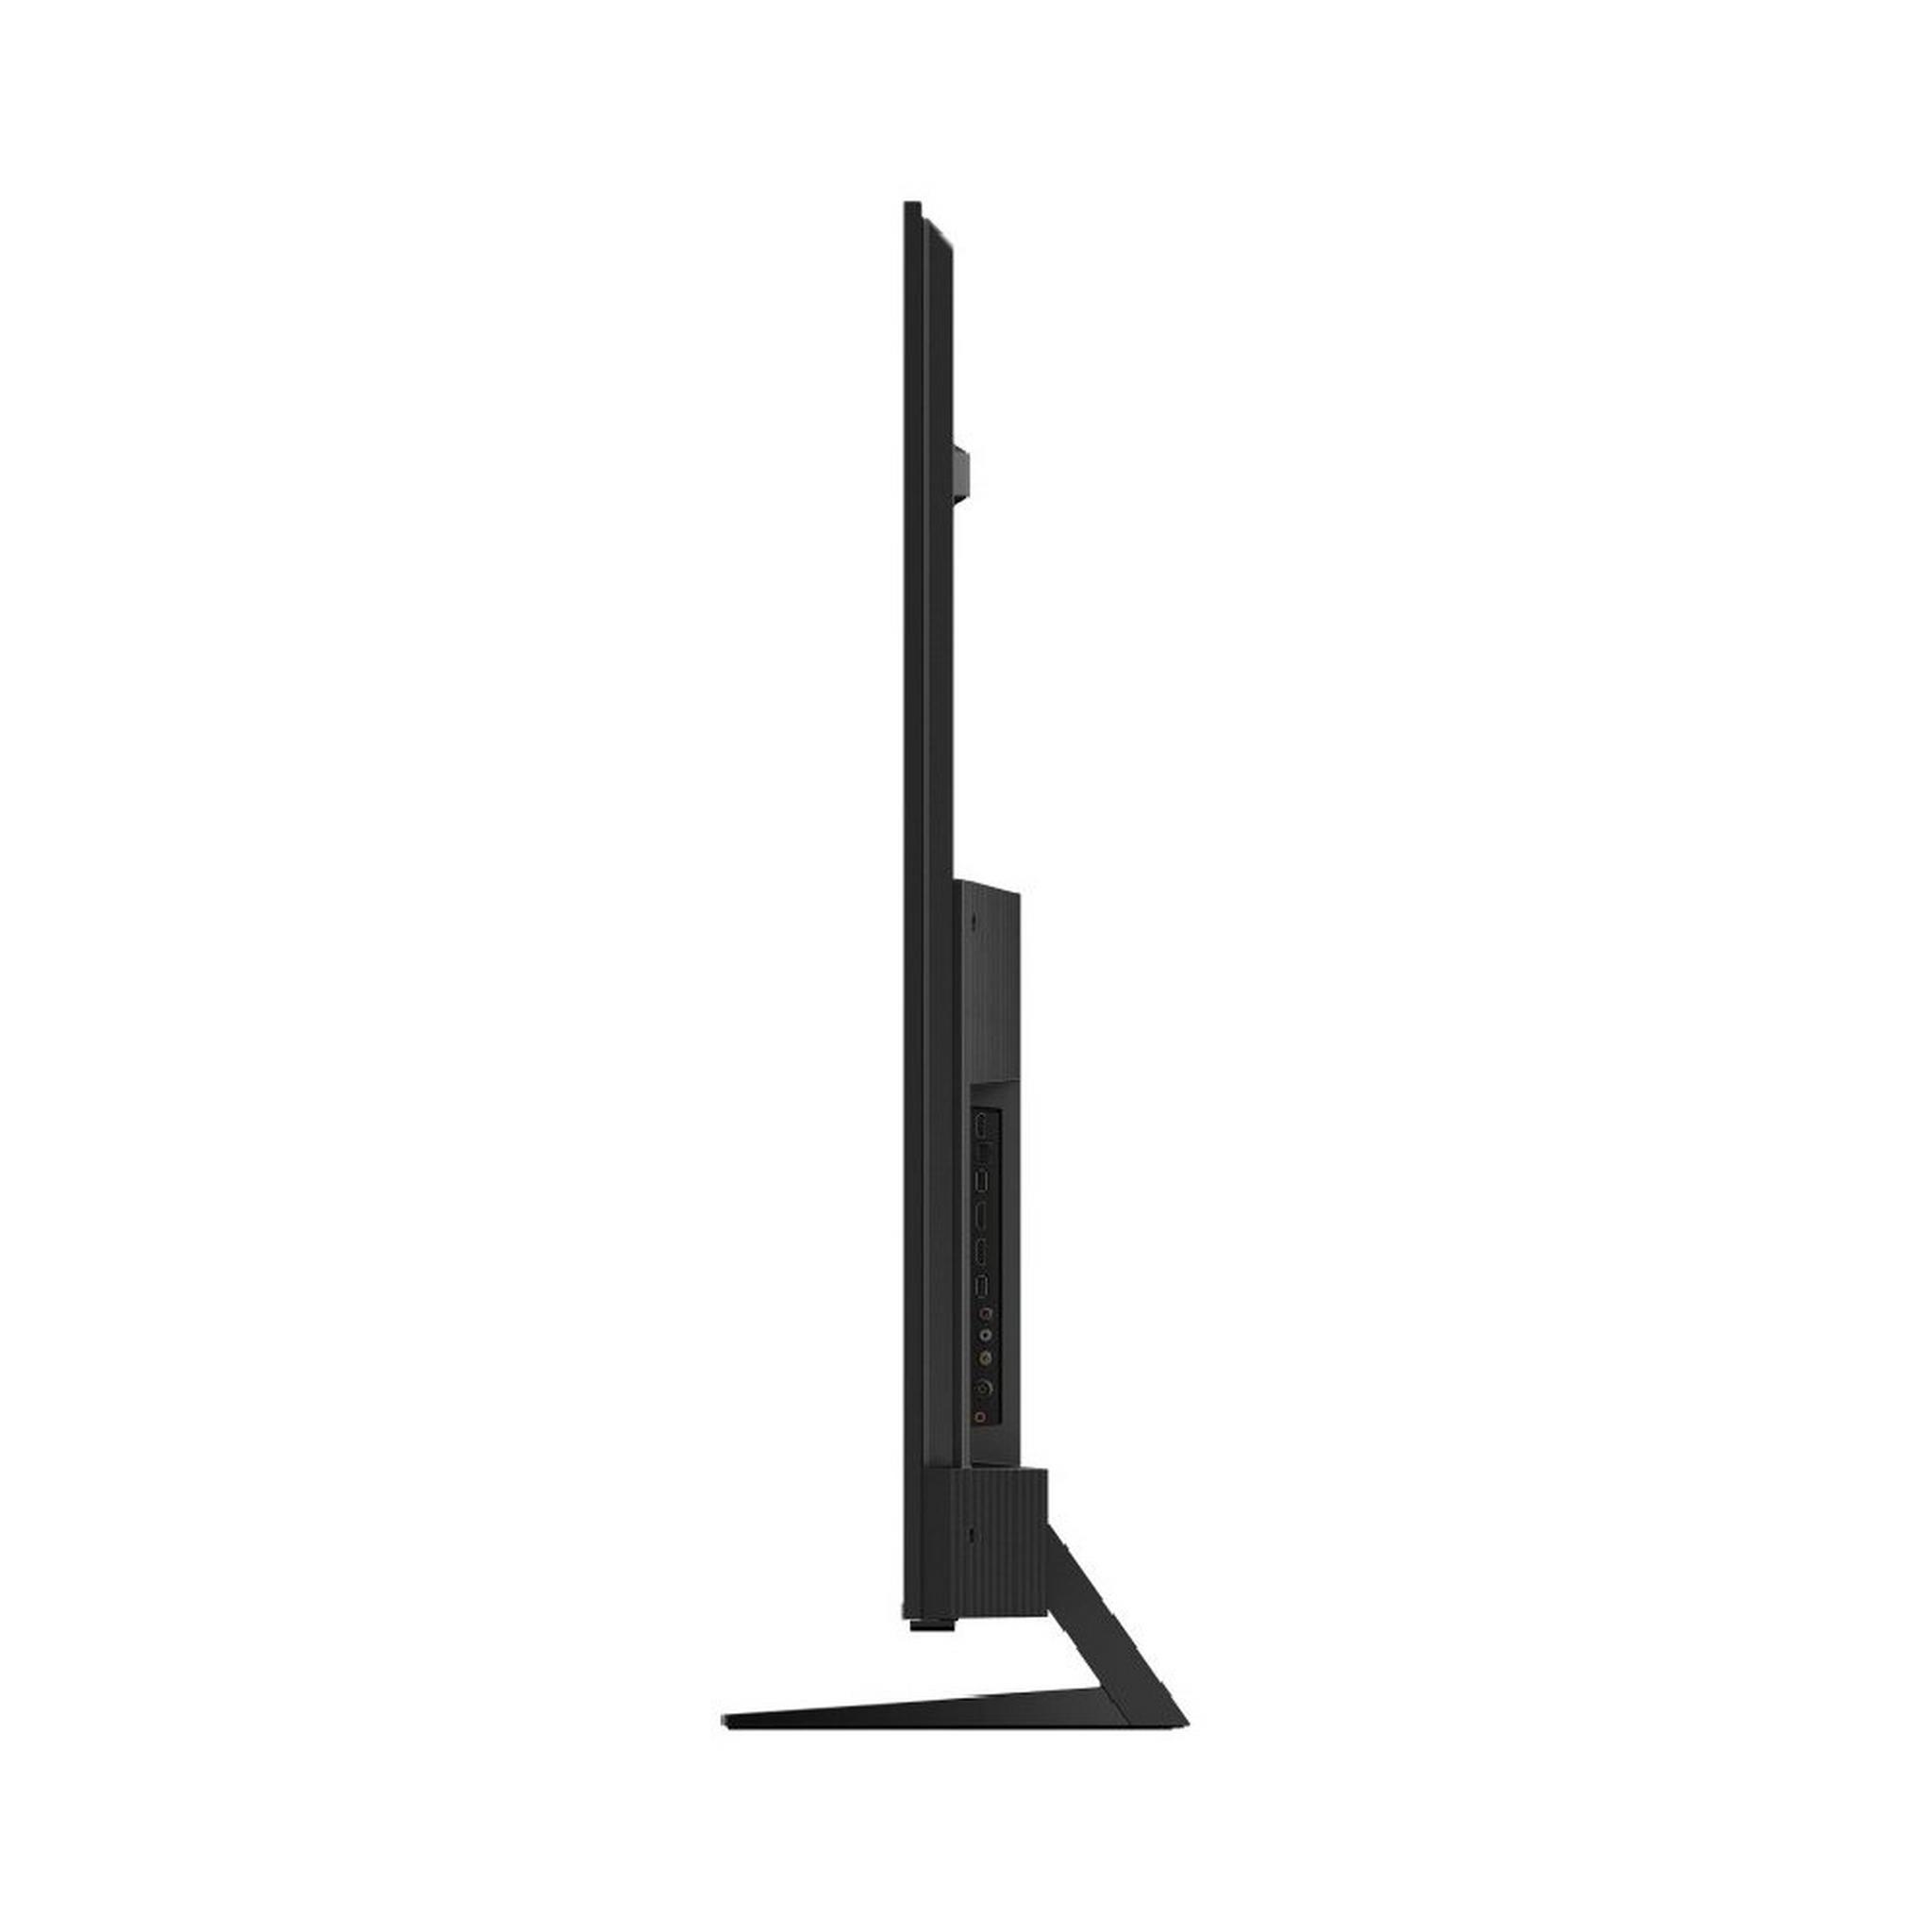 TCL 75- inch 4K QLED Smart Google TV 75C745 Black